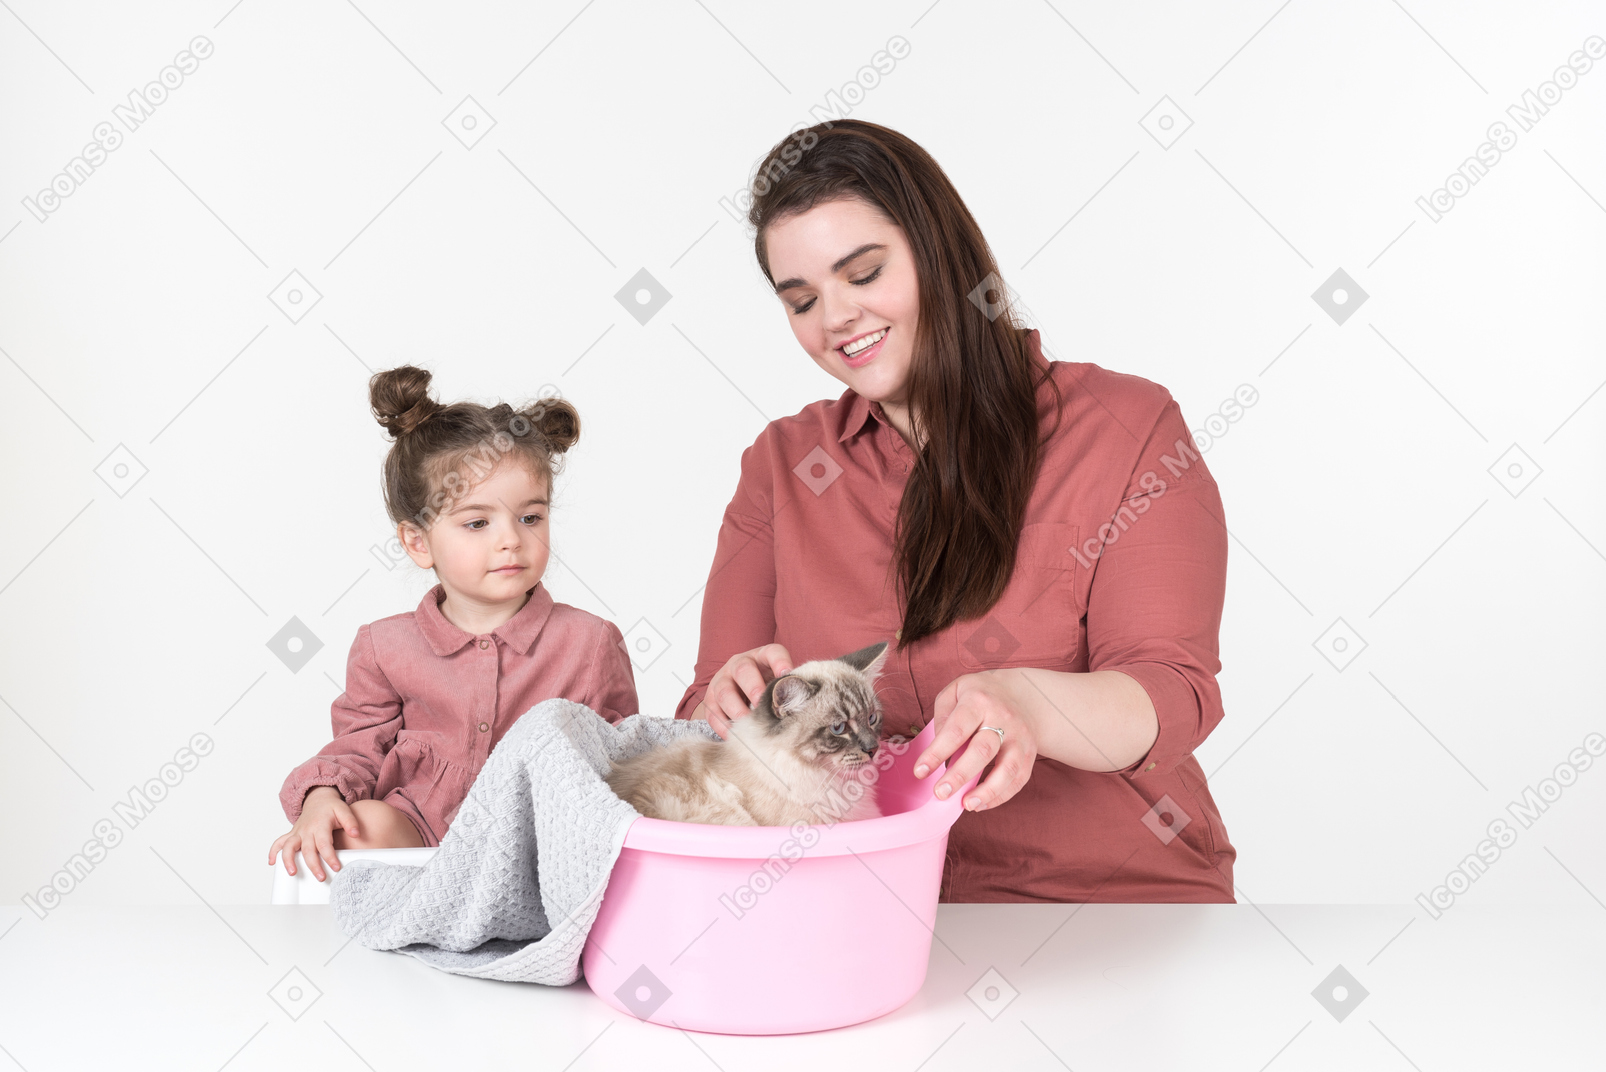 La mamma e la figlia piccola, vestite con abiti rossi e rosa, sedute a tavola con il loro gatto di famiglia